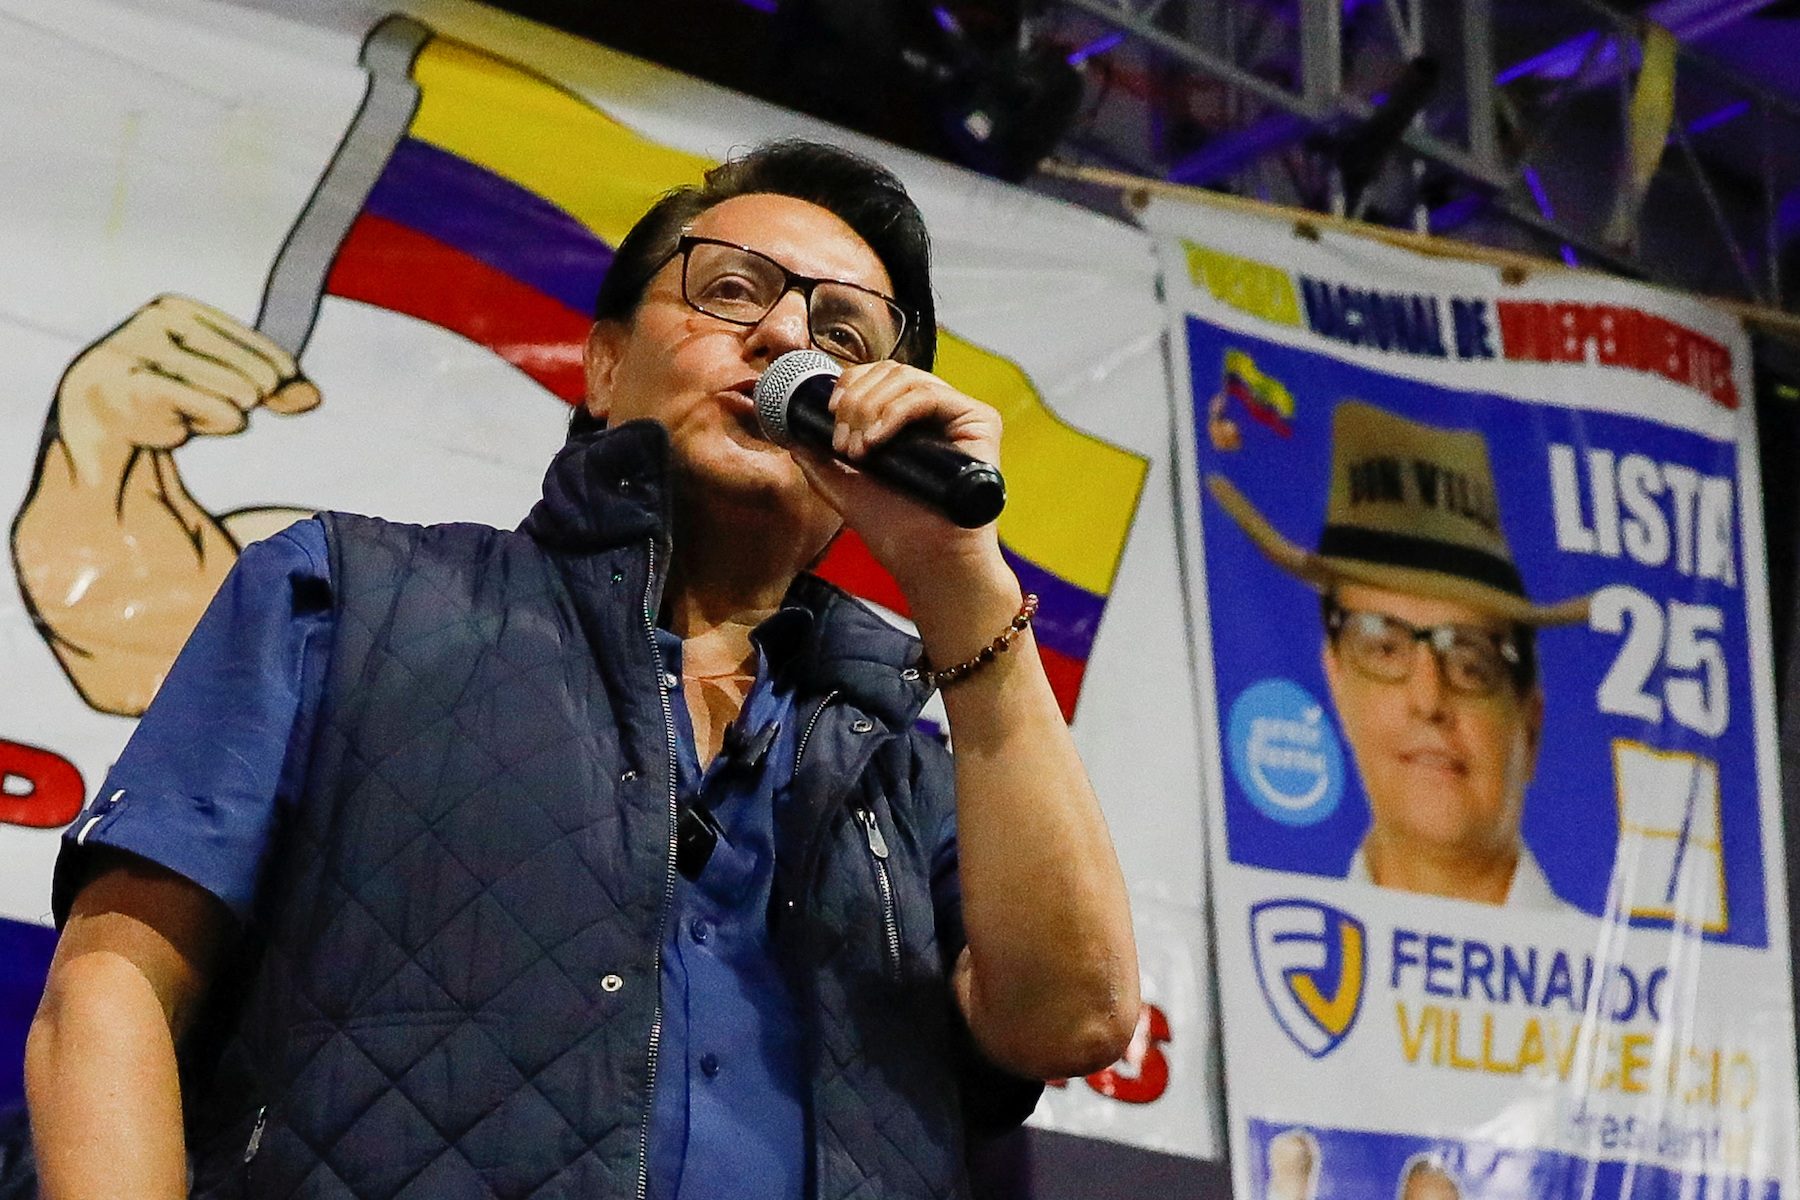 Ecuador presidential candidate Villavicencio killed, suspect dead – authorities